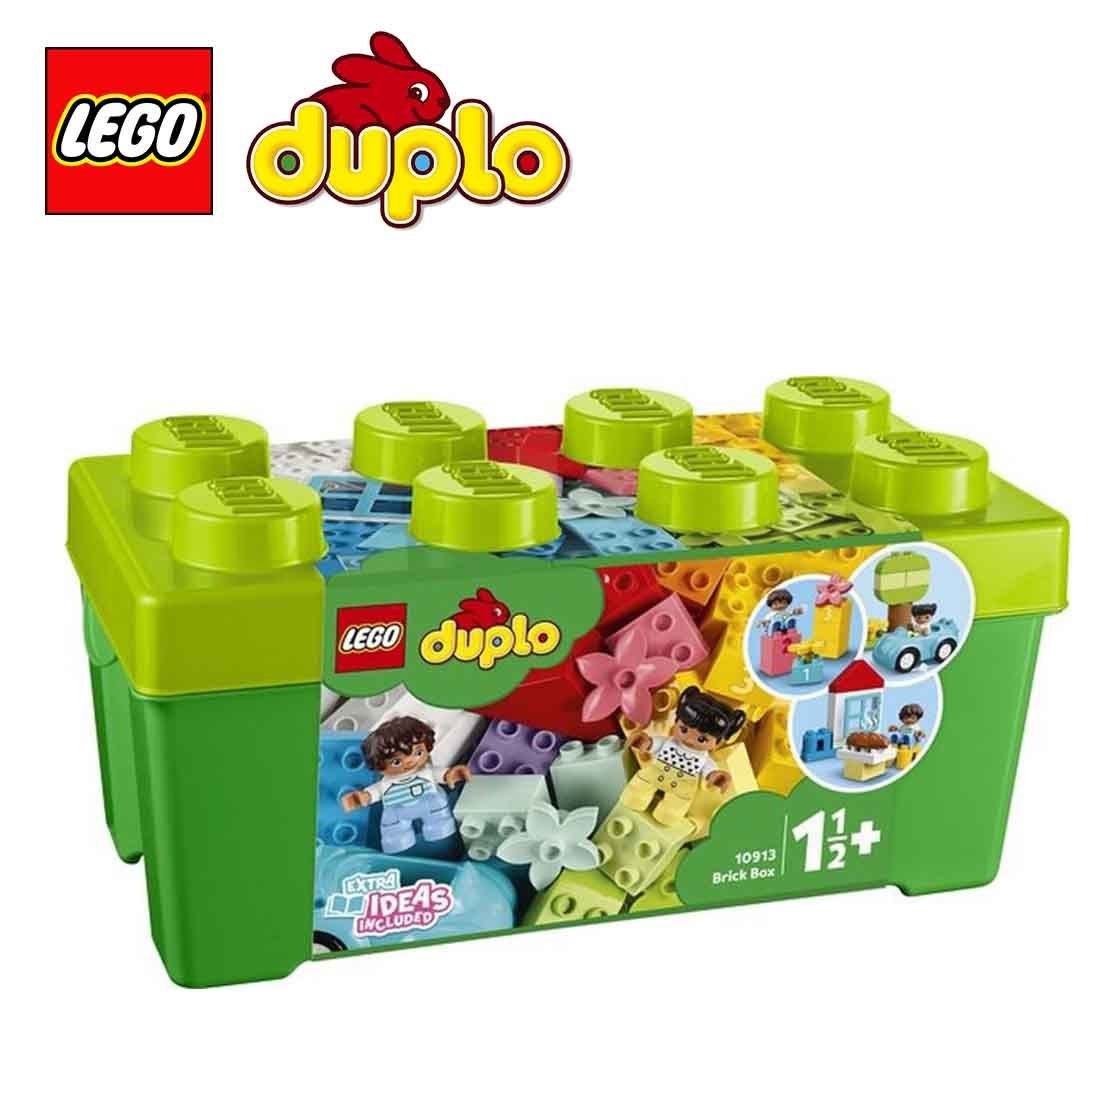 Merchandising Lego: 10913 - Duplo Classic - Contenitore Di Mattoncini NUOVO SIGILLATO, EDIZIONE DEL 15/01/2020 SUBITO DISPONIBILE